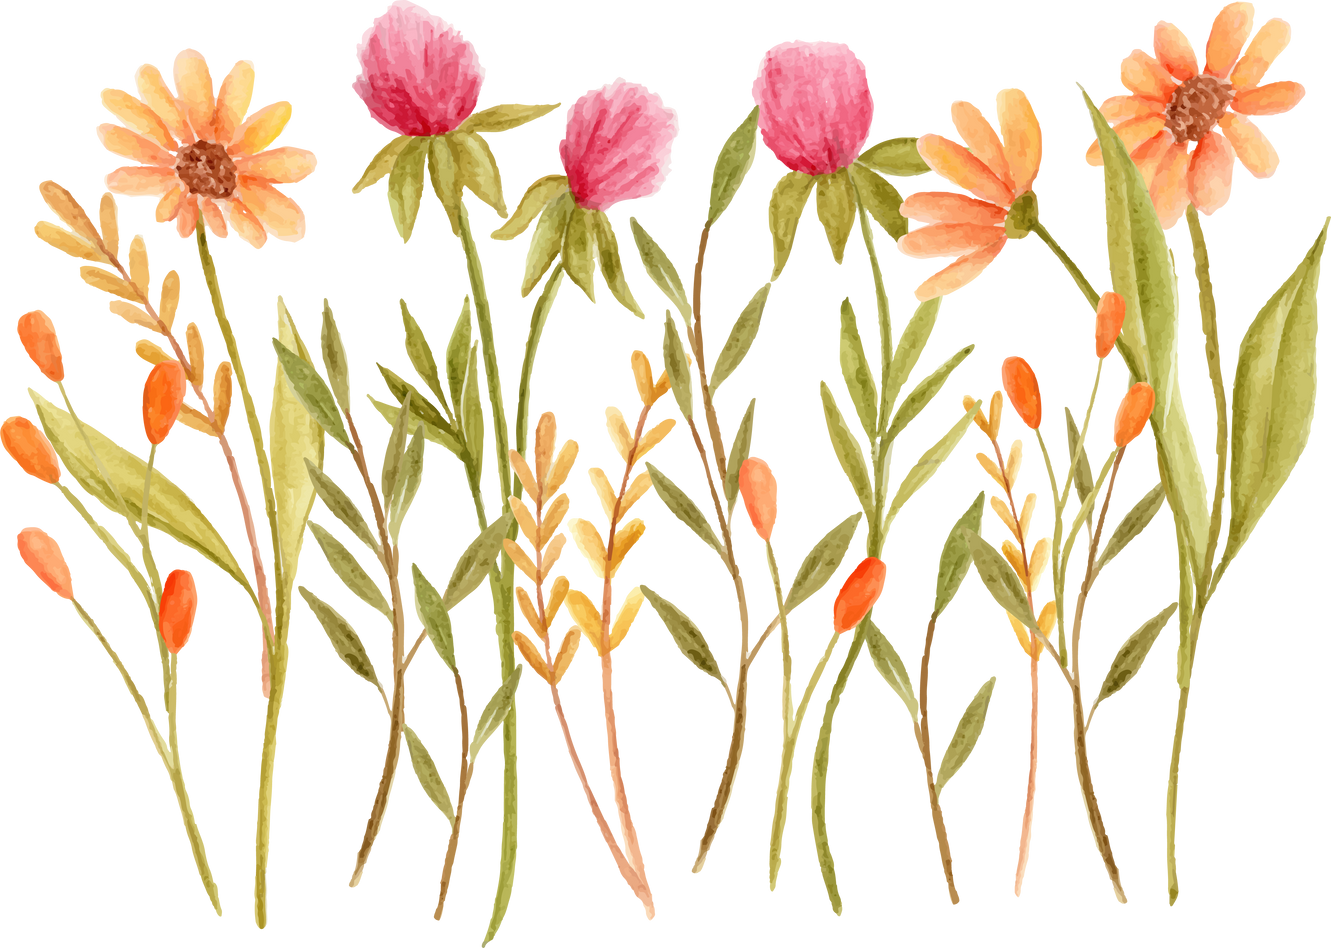 Watercolor pink and orange flower arrangement